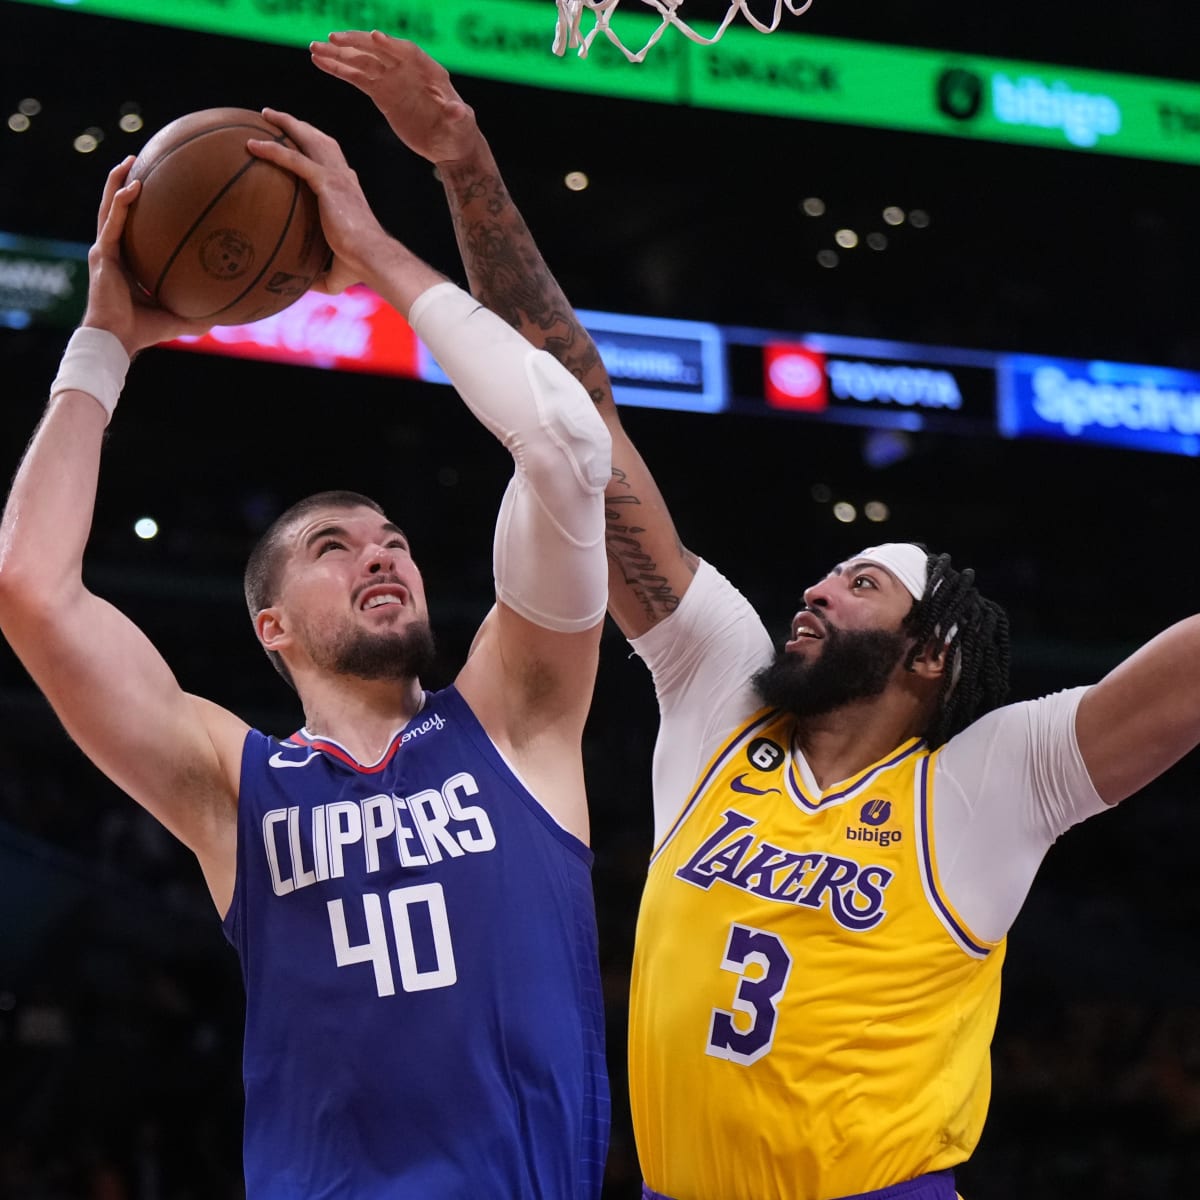 Los Angeles Lakers' Steve Nash has unnerving injury